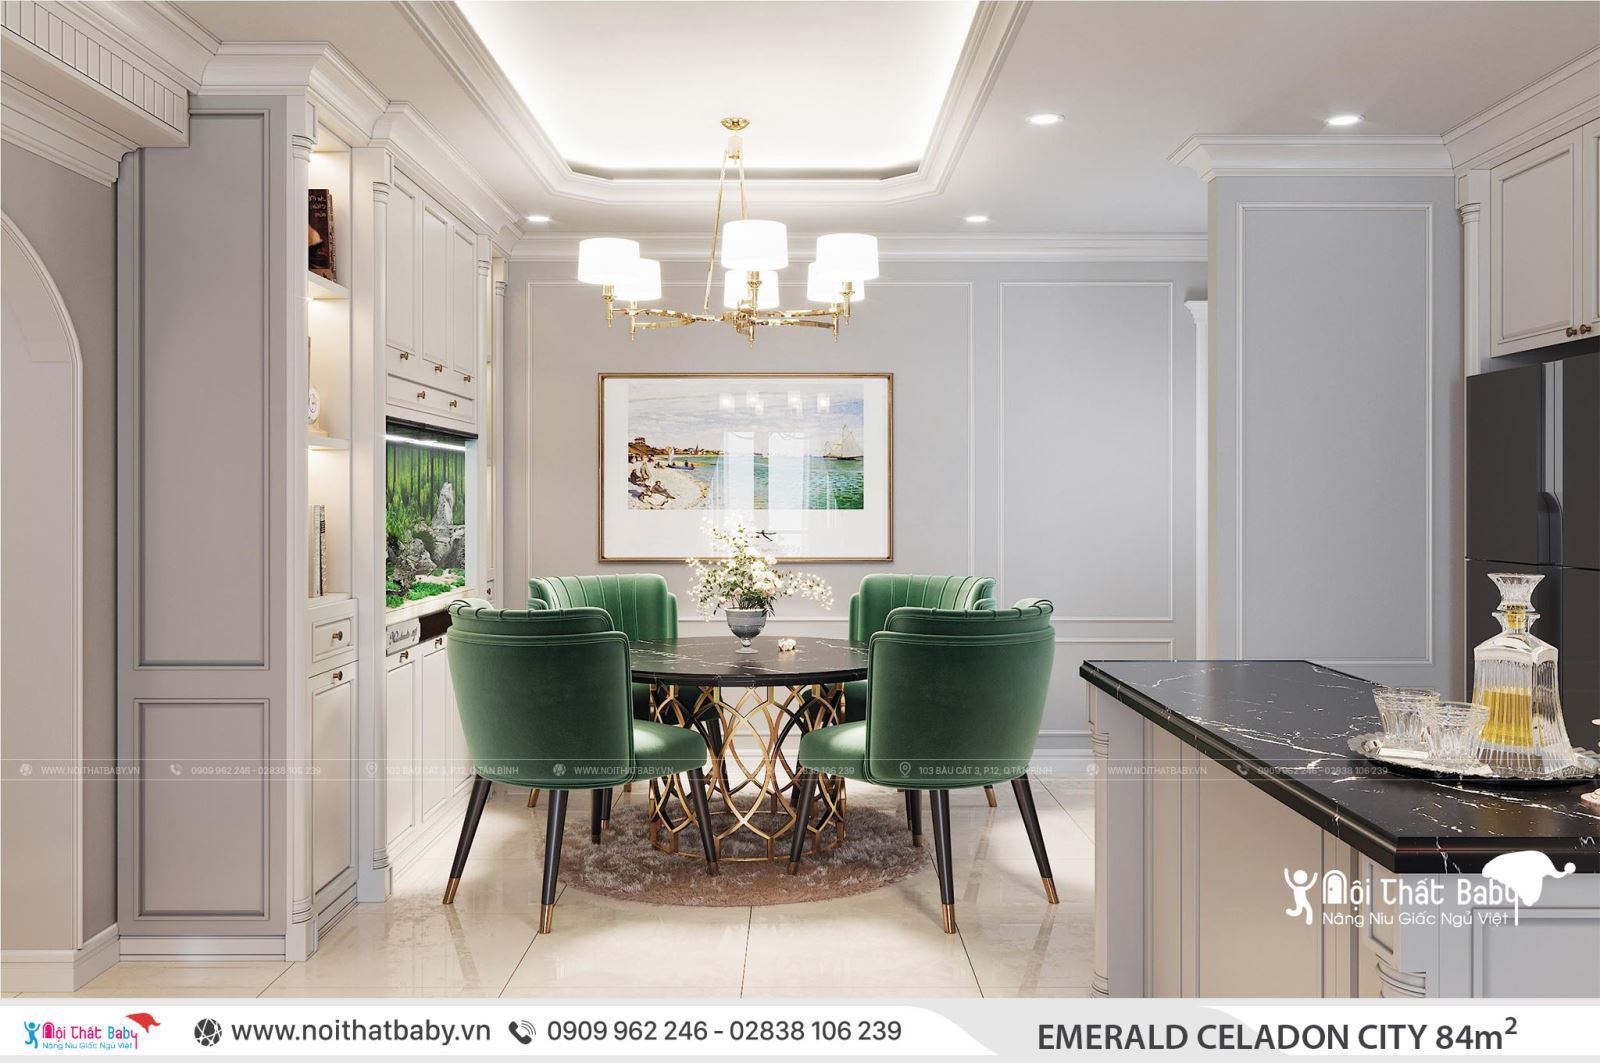 Thiết kế nội thất căn hộ Emerald Celadon City 84m2 2 phòng ngủ